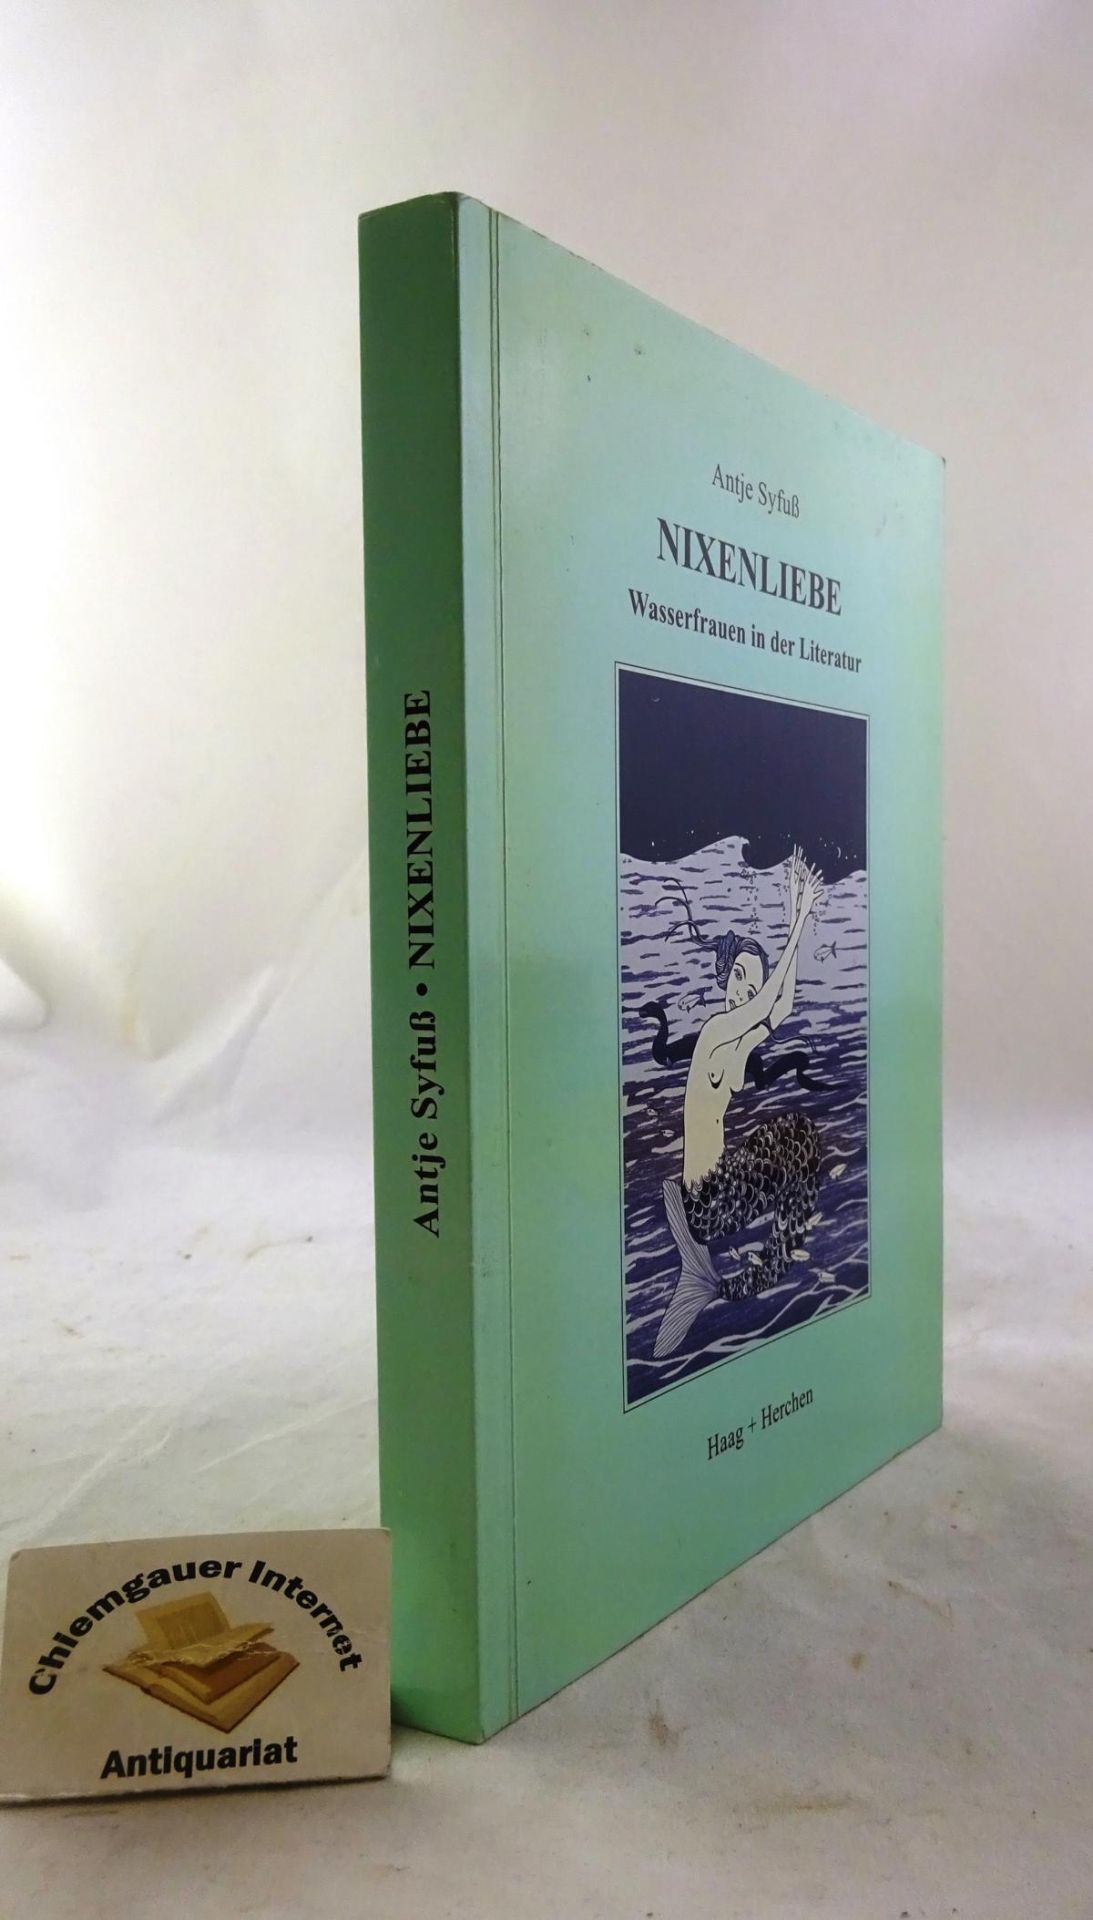 Nixenliebe : Wasserfrauen in der Literatur. Mit Illustrationen von Kat Menschik. - Syfuß, Antje